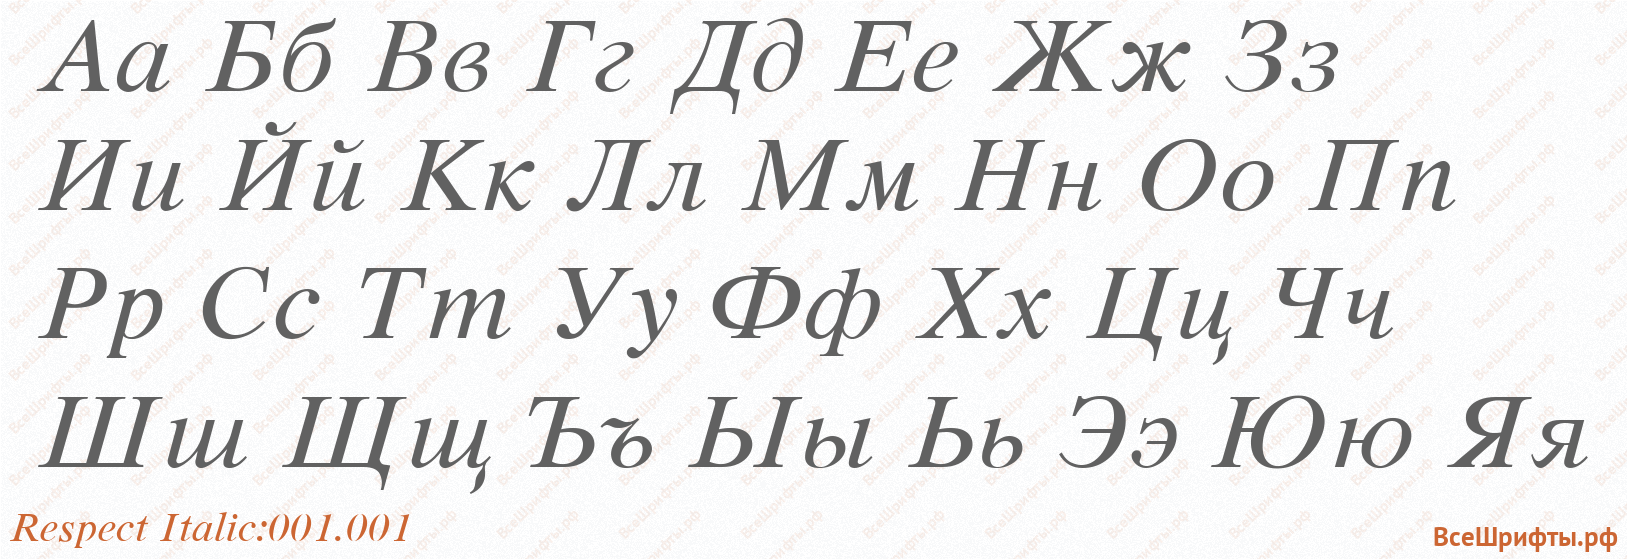 Шрифт Respect Italic:001.001 с русскими буквами